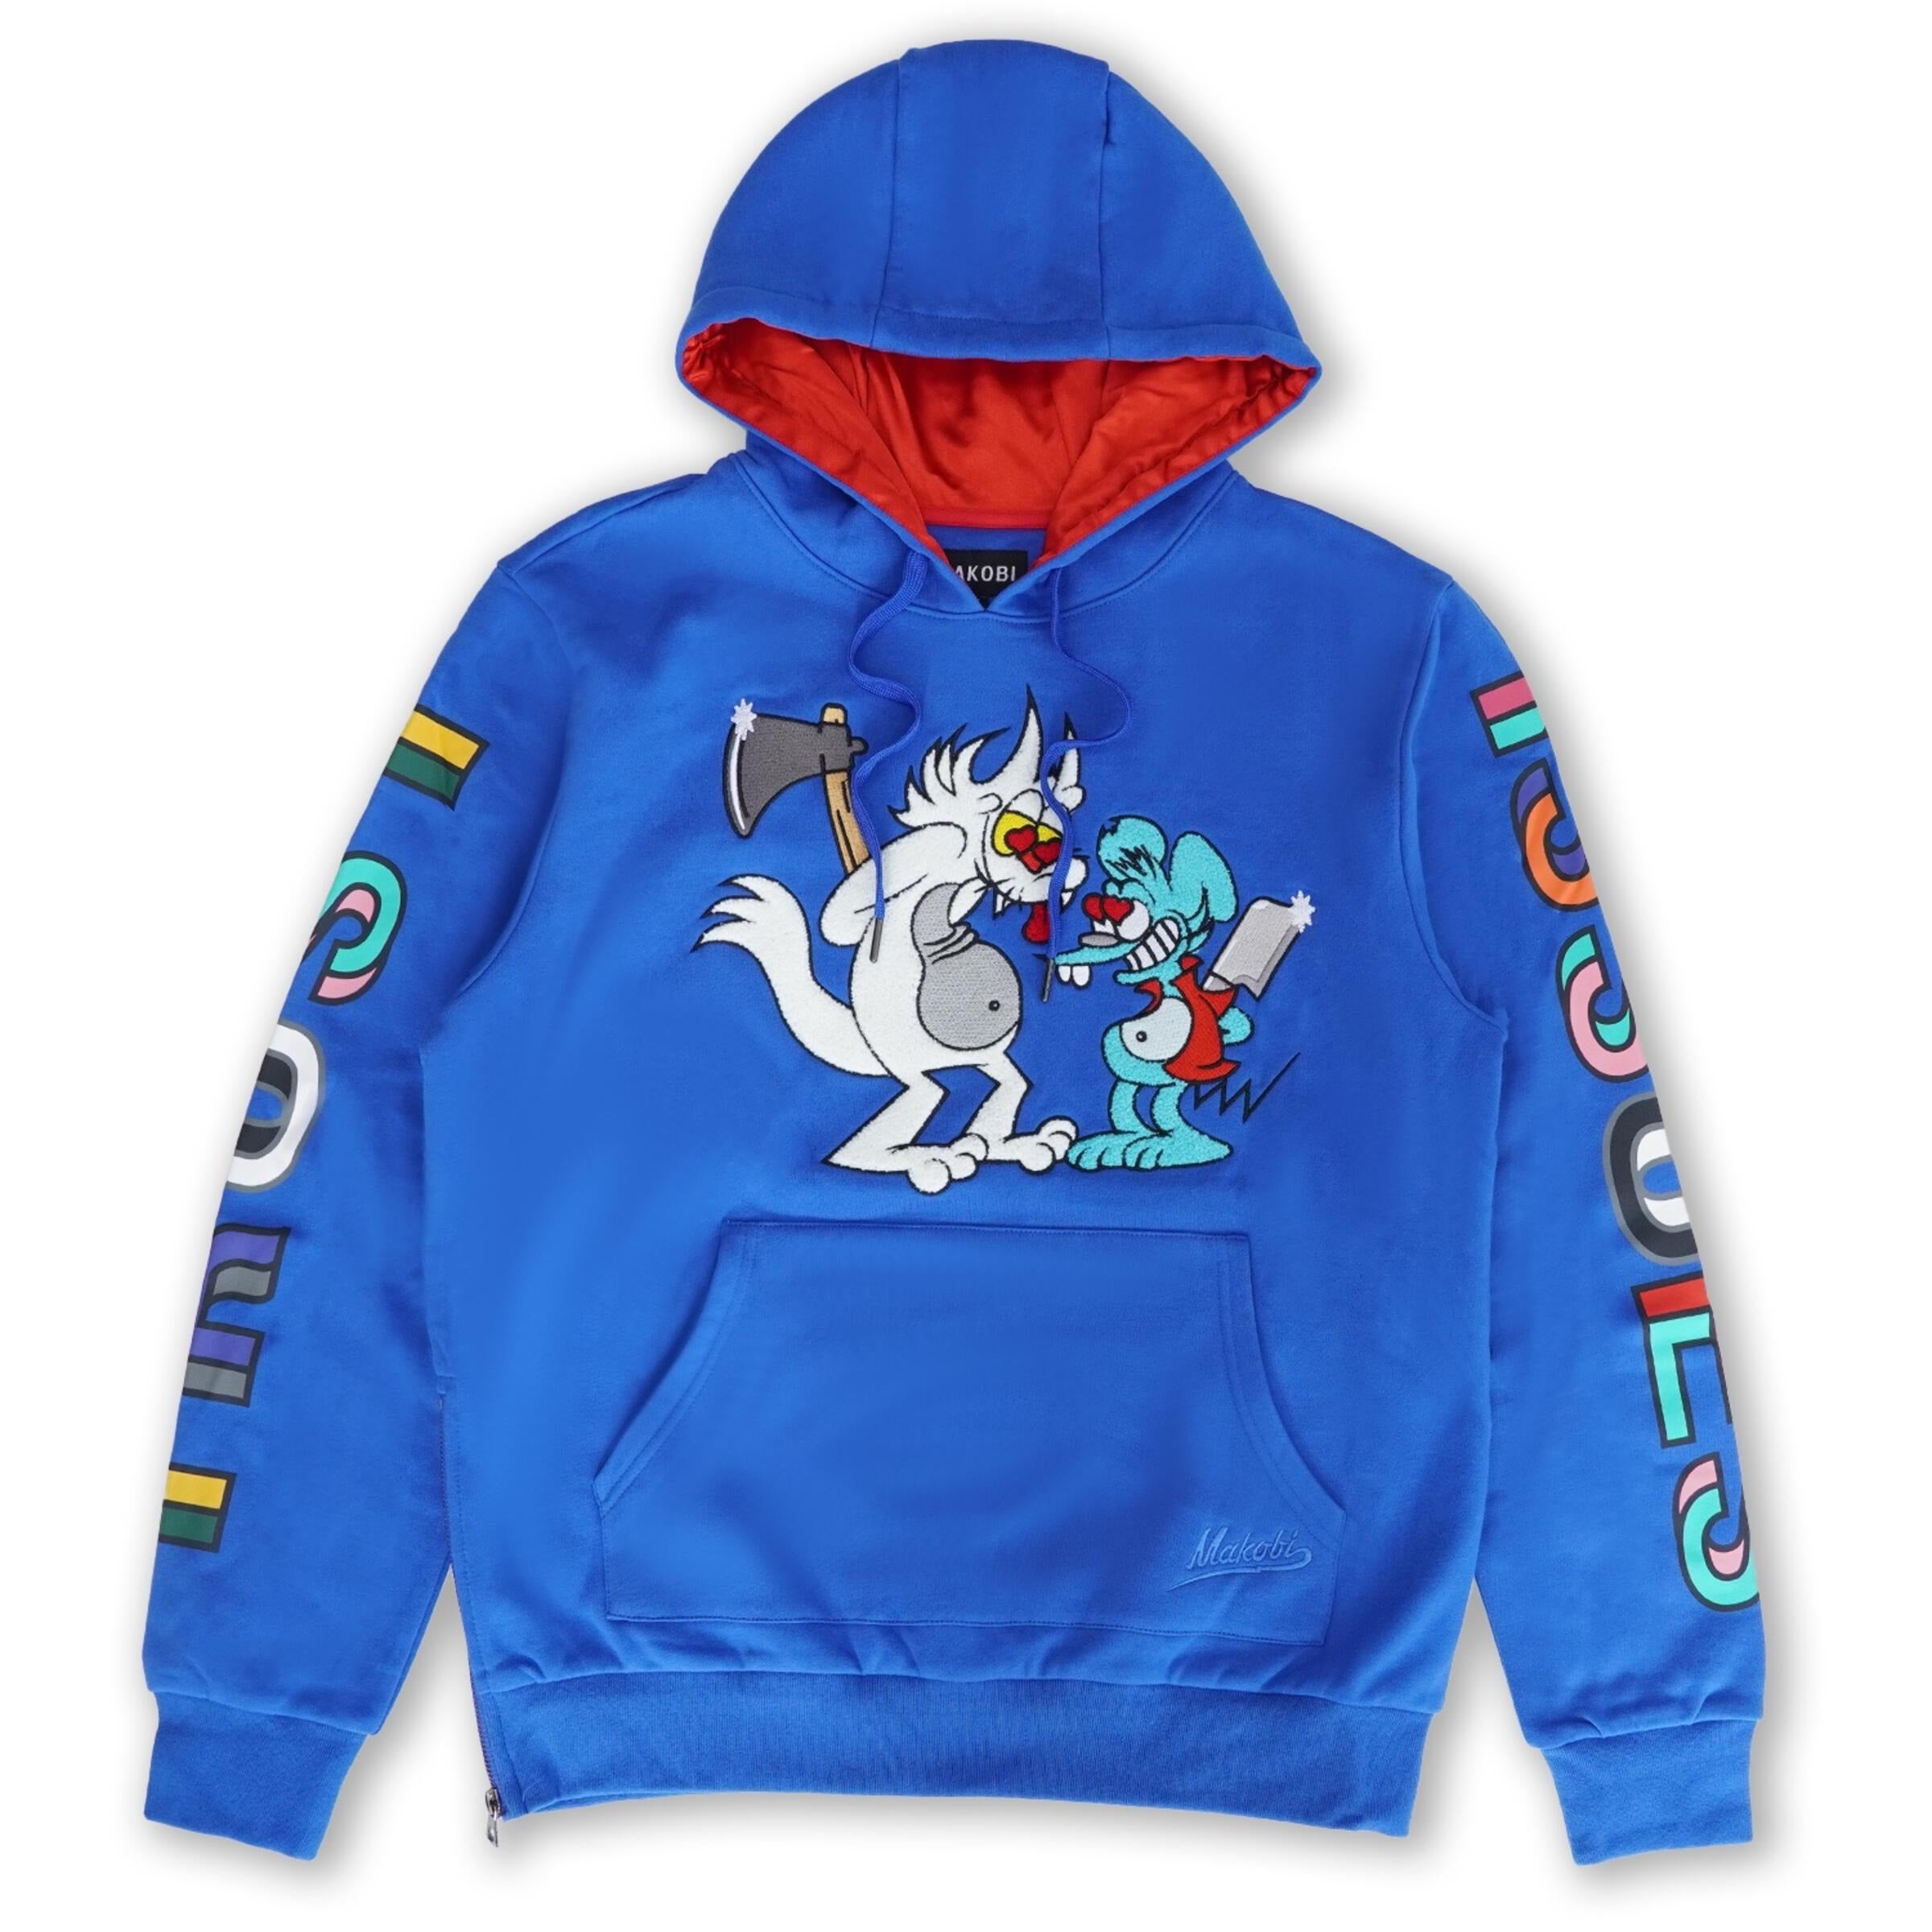 makobi big & tall blue trust issue hoodie